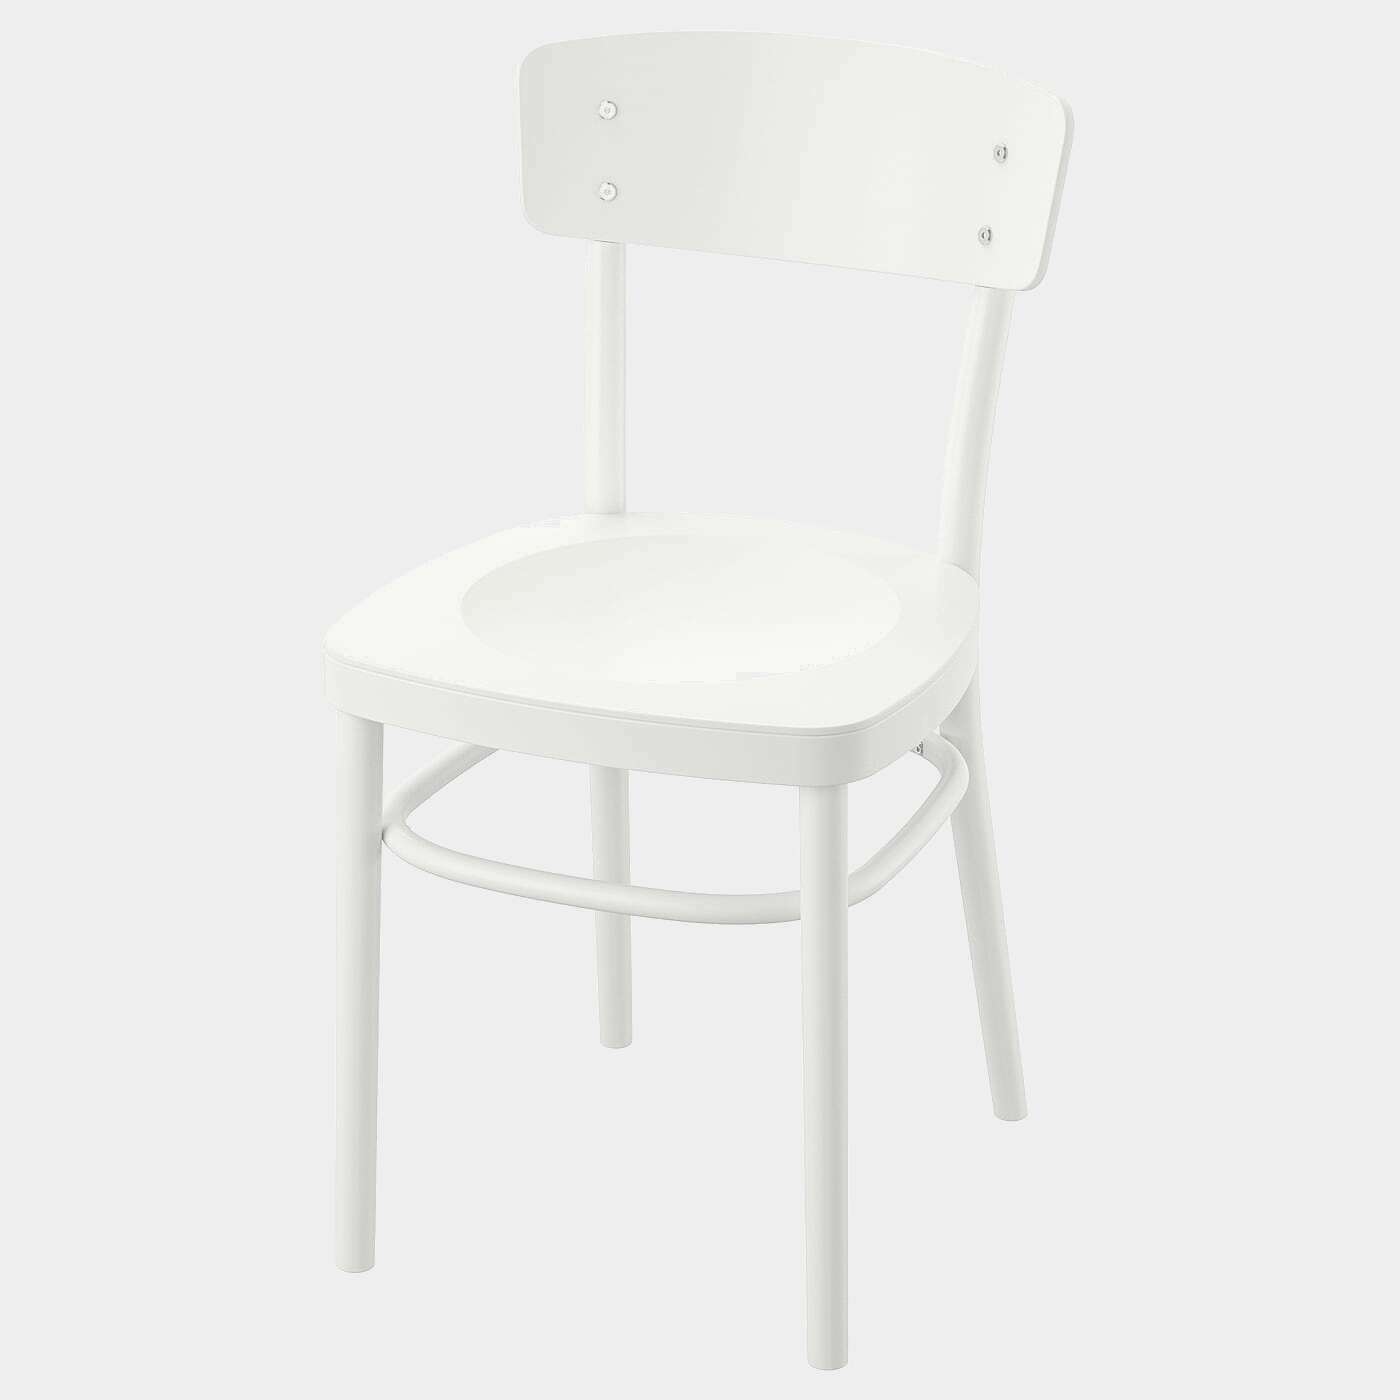 IDOLF Stuhl  - Esszimmerstühle - Möbel Ideen für dein Zuhause von Home Trends. Möbel Trends von Social Media Influencer für dein Skandi Zuhause.